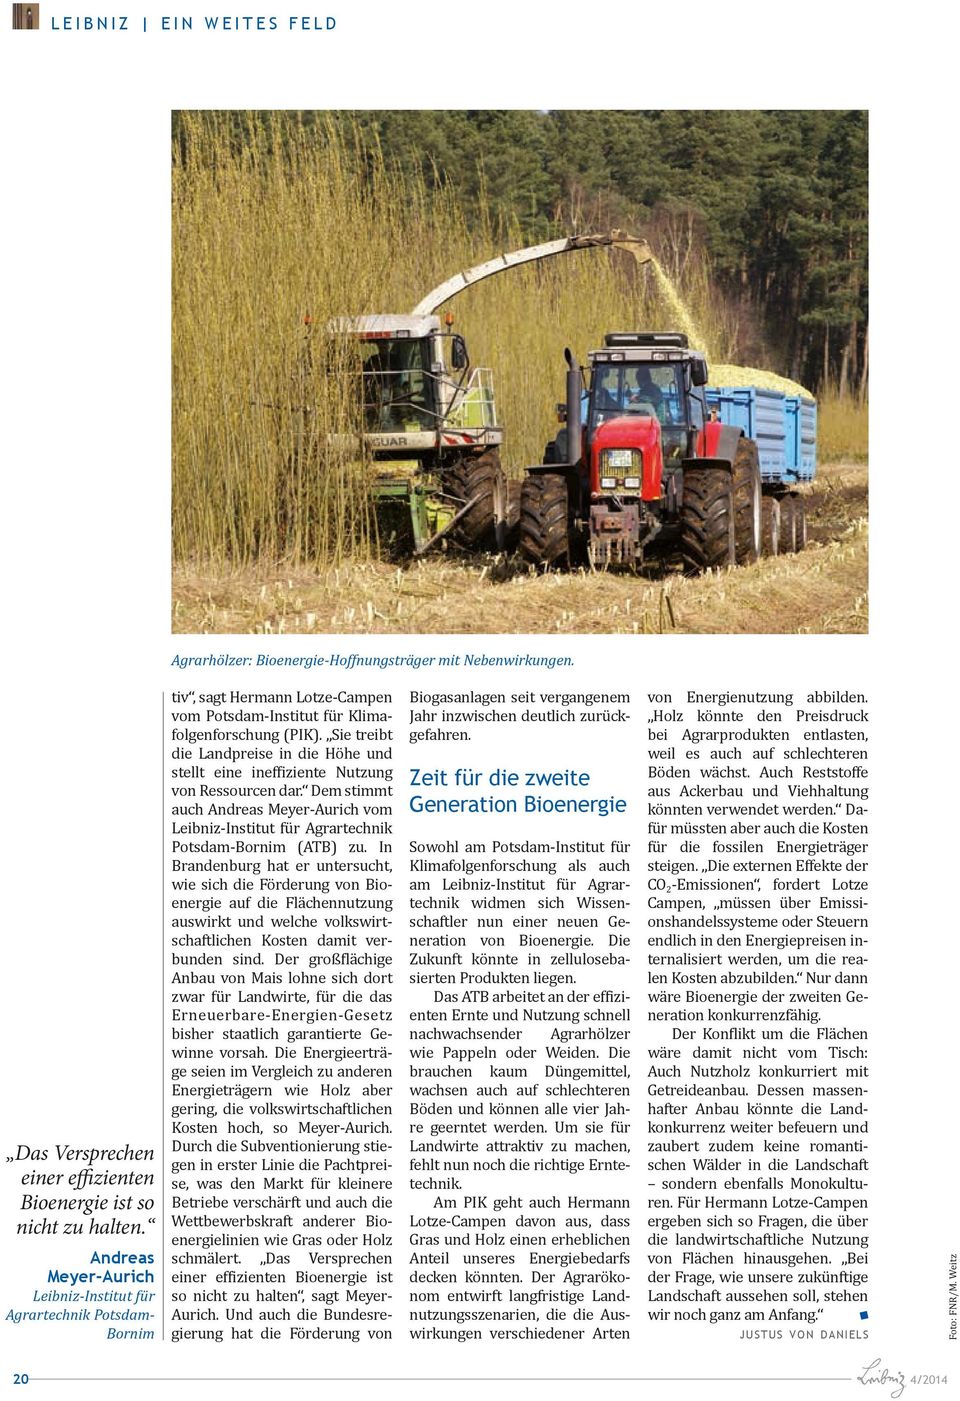 Sie treibt die Landpreise in die Höhe und stellt eine ineffiziente Nutzung von Ressourcen dar. Dem stimmt auch Andreas Meyer-Aurich vom Agrartechnik Potsdam-Bornim (ATB) zu.